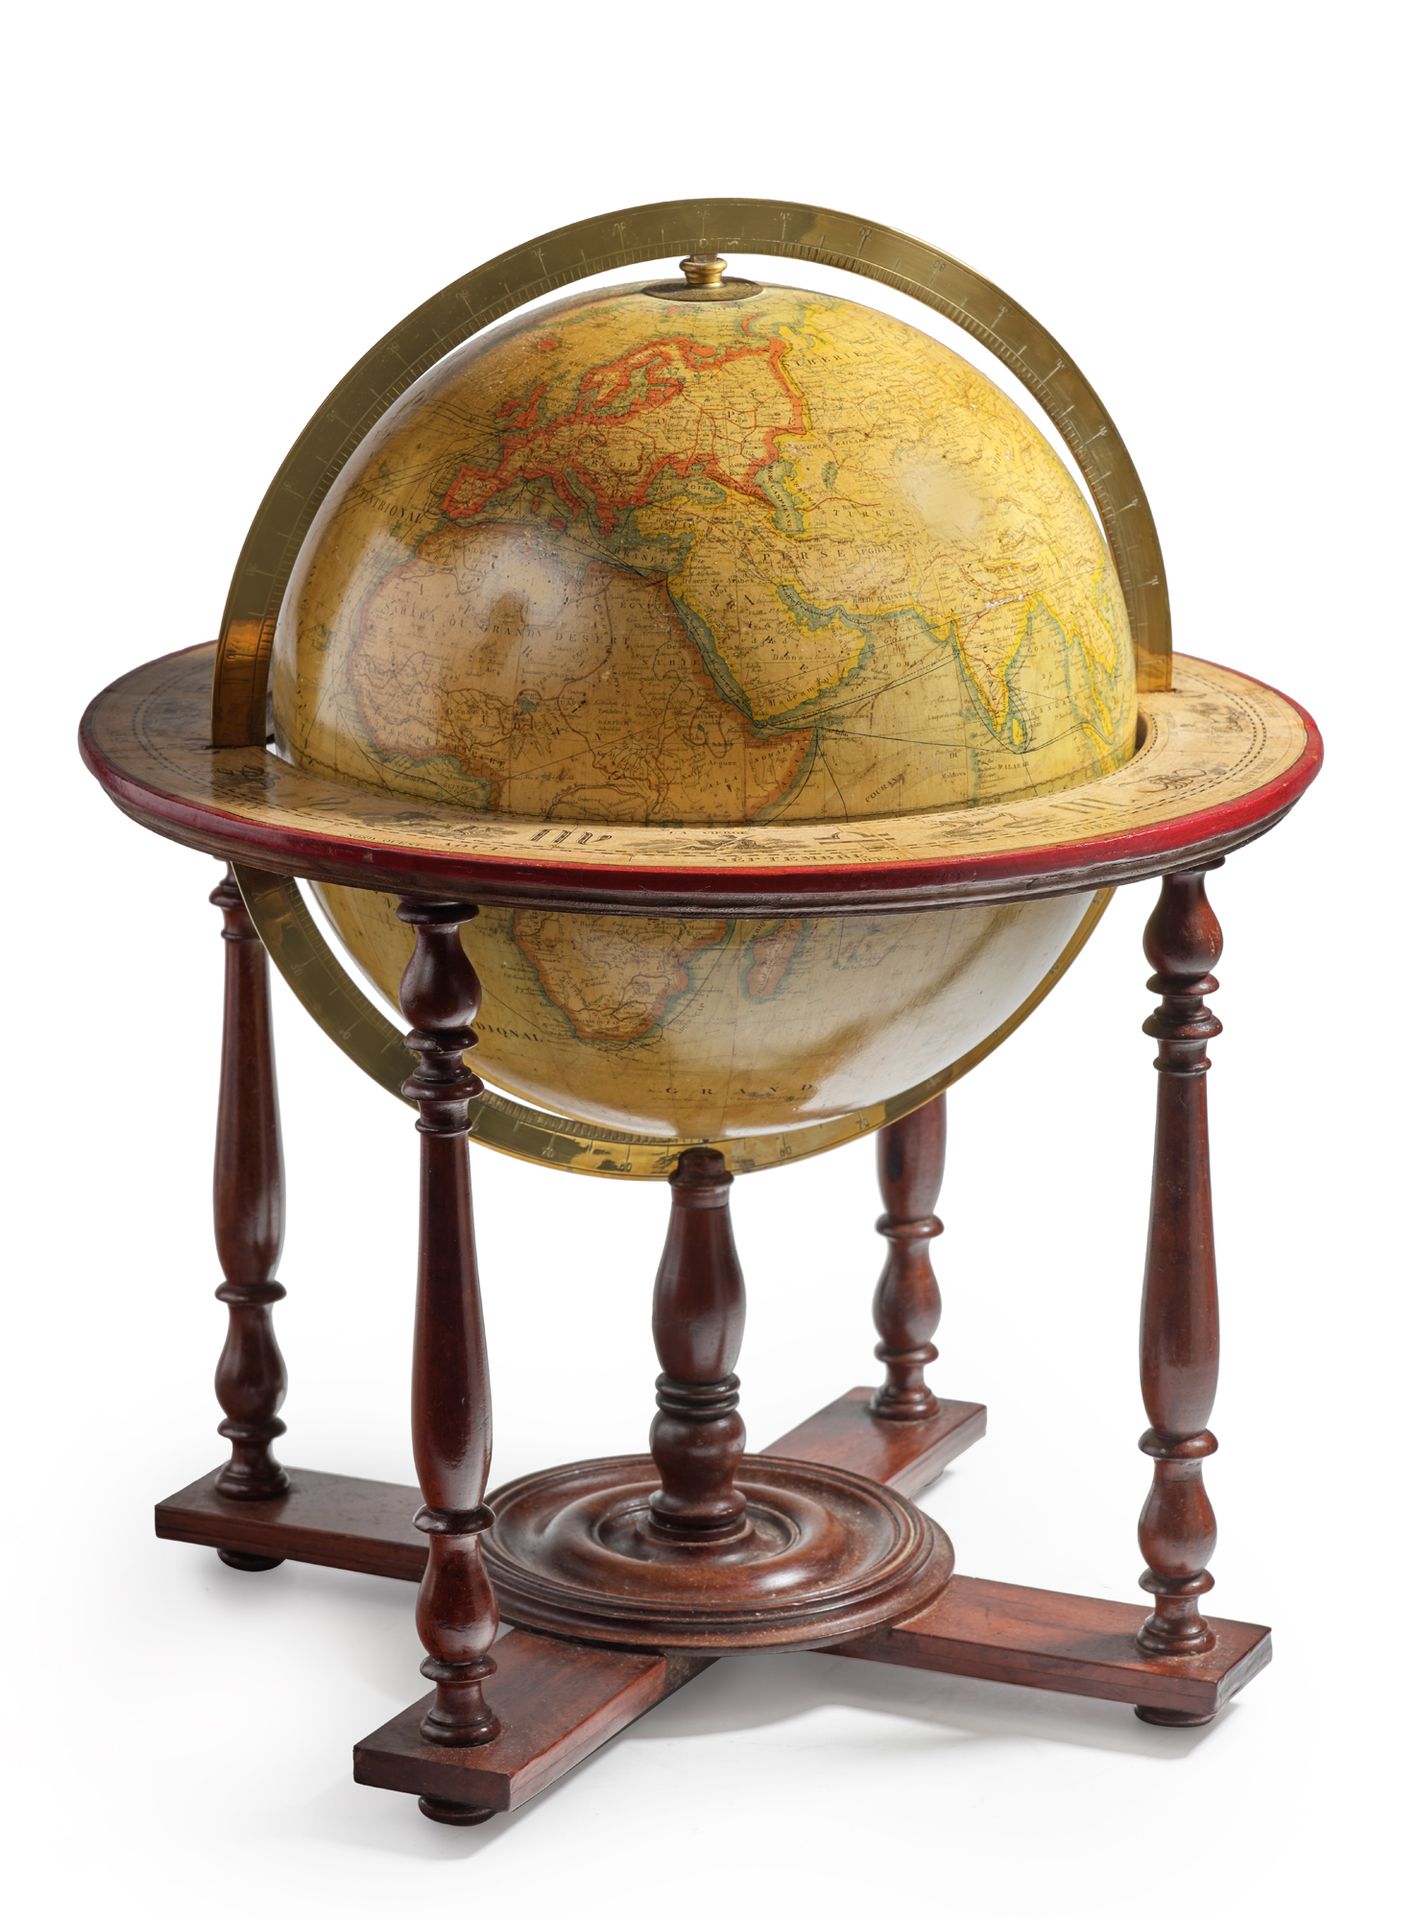 Null 签署了巴黎LEBEGUE的地球仪，带有黄铜子午线圆环。带四根柱子的腿（有些修复）
高60厘米 球体的直径：30厘米